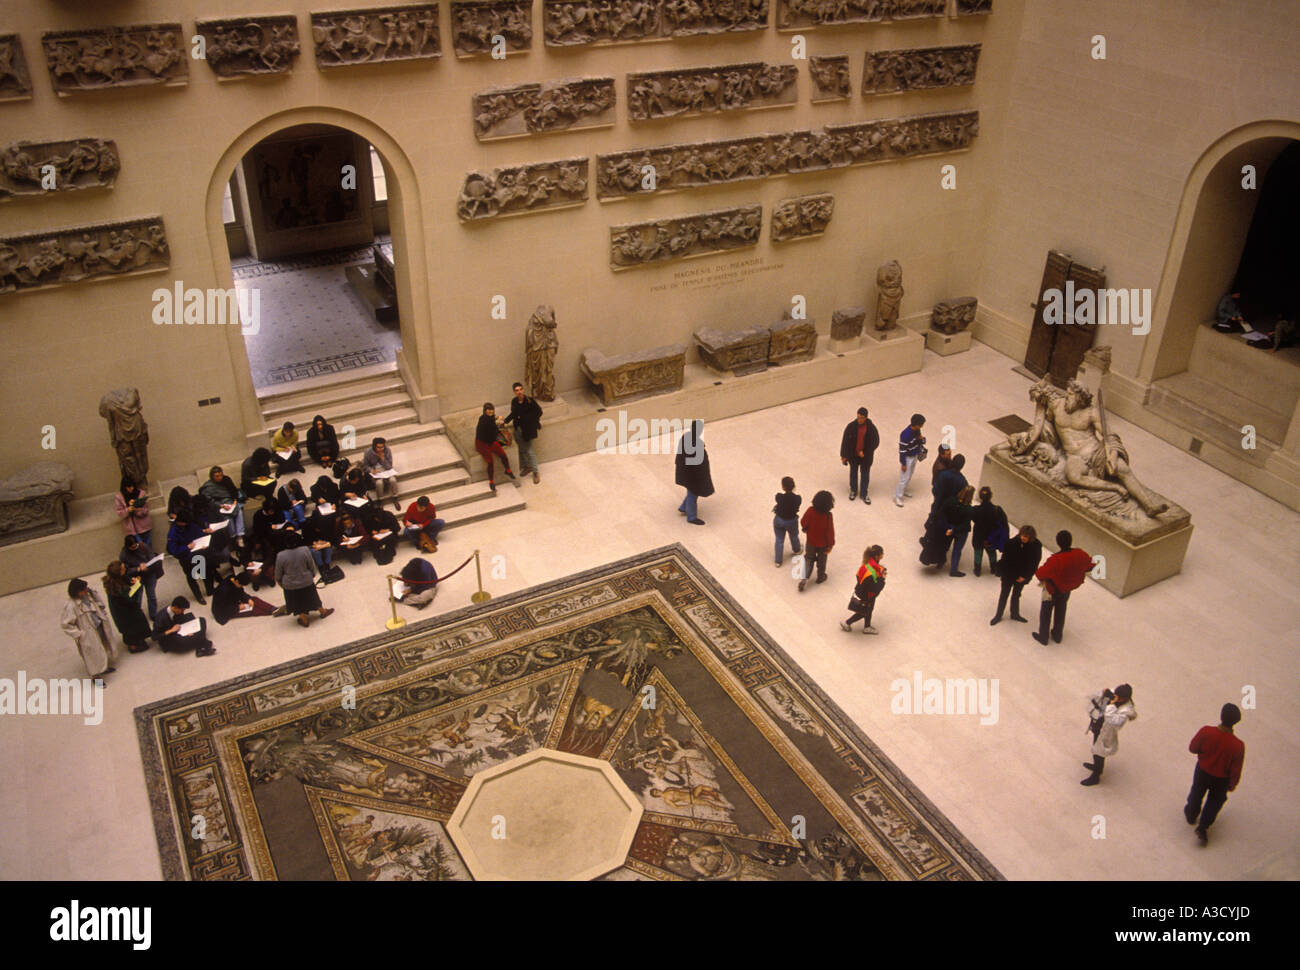 Les gens, les étudiants sur l'excursion, antiquités grecques au Louvre, Musée Denon, musée, musée d'art français, Paris, Ile-de-France, France Banque D'Images